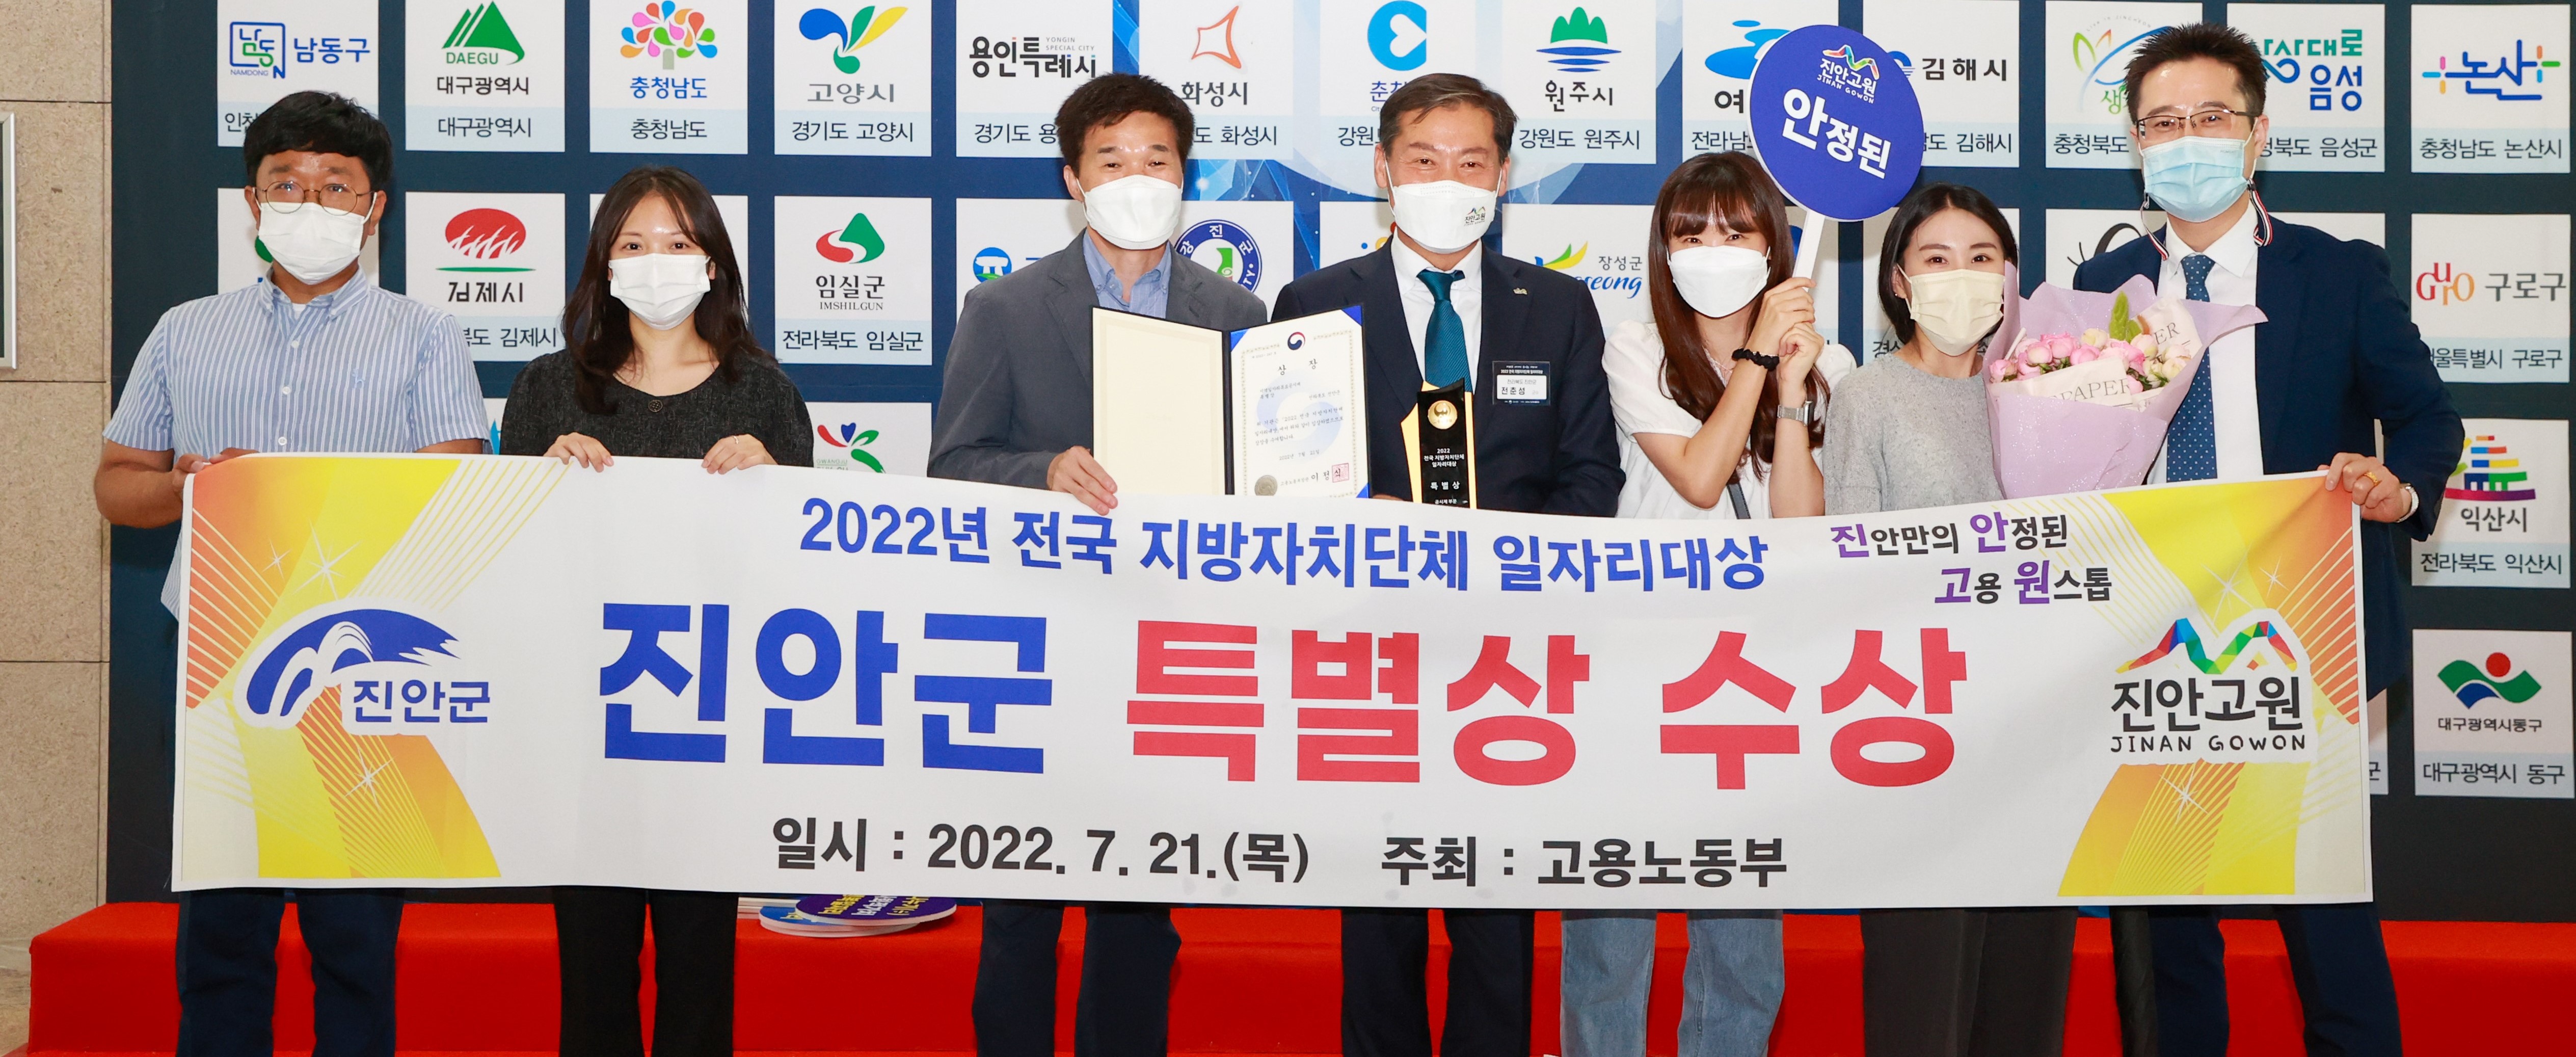 2022년 전국 지방자치단체 일자리대상
진안군 특별상 수상
일시 2022.7.21(목) 주최:고용노동부